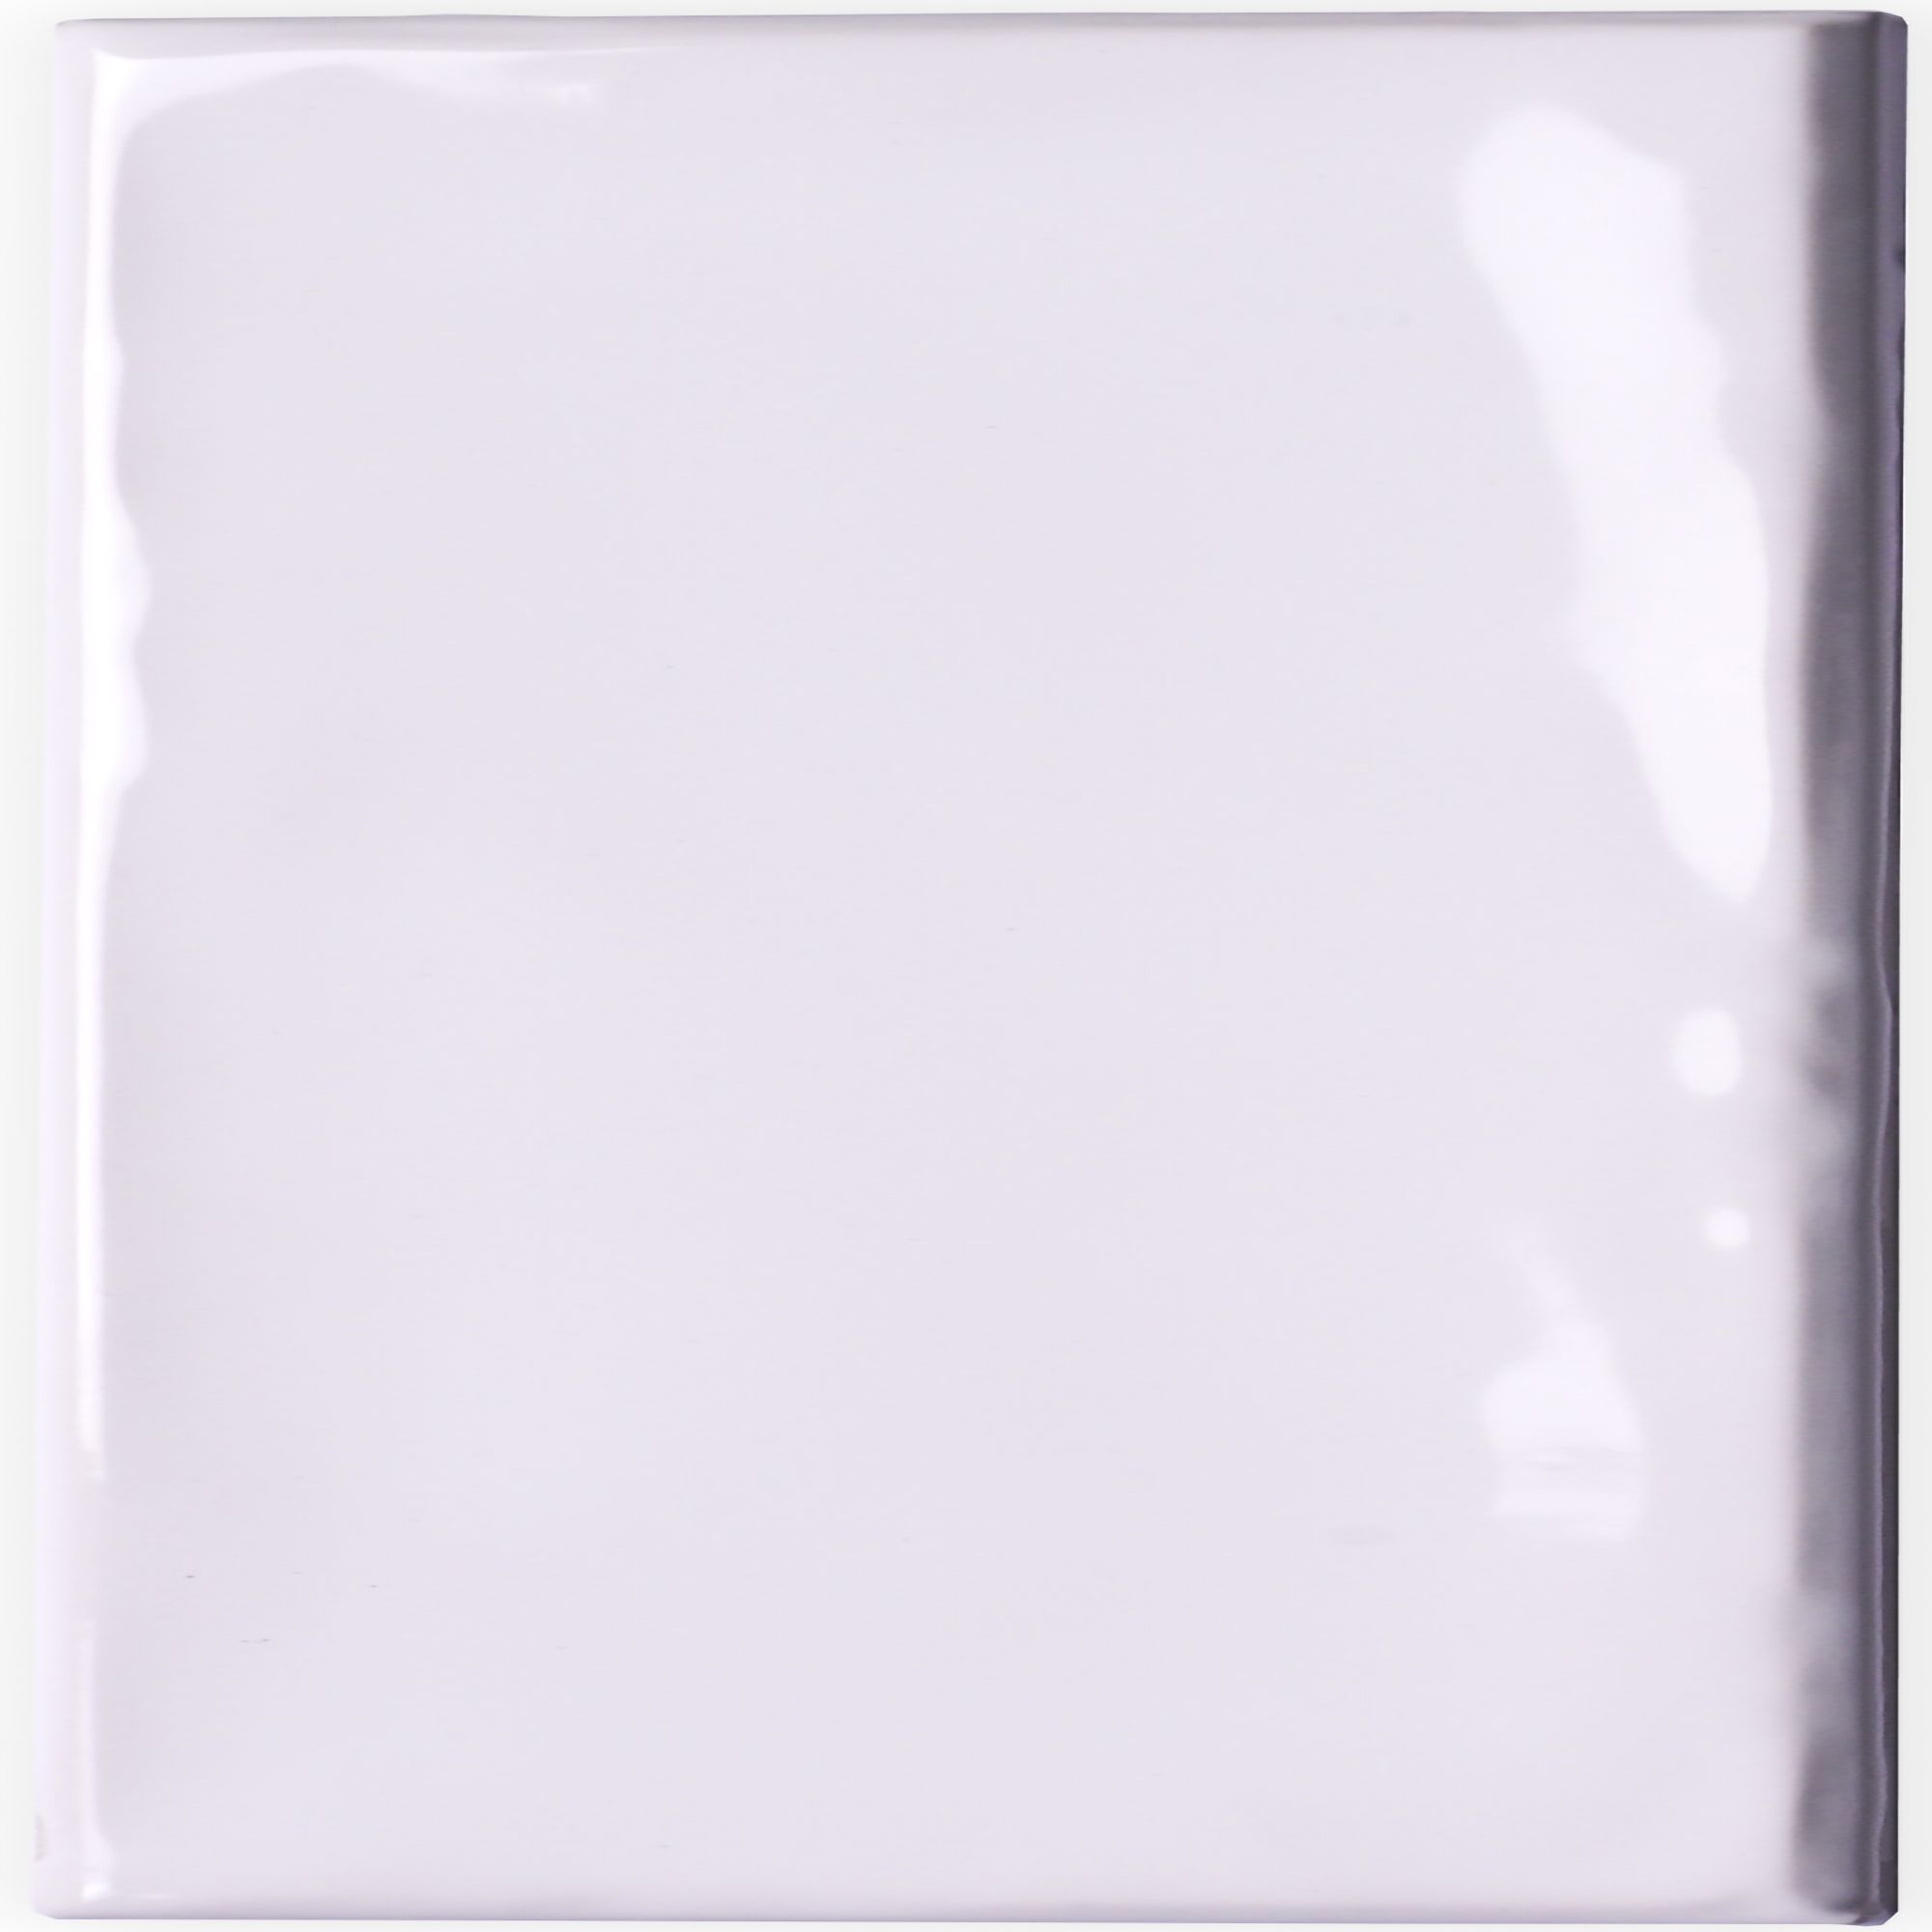 Johnson Tiles Iris White Gloss Ceramic Wall Tile Sample